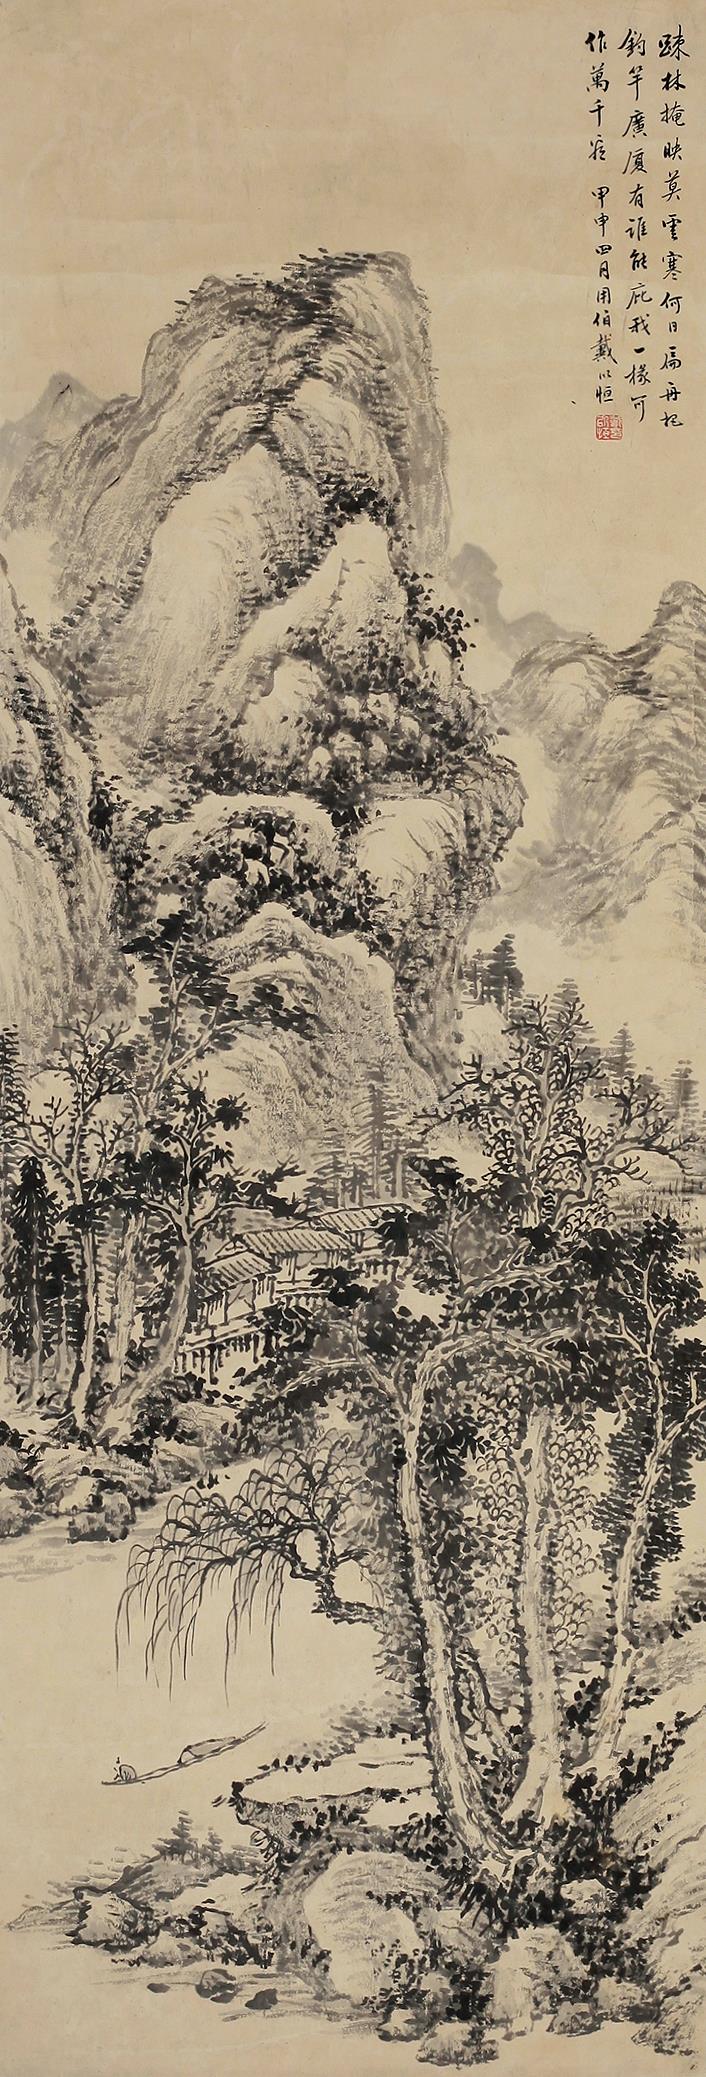 戴以恒 甲申(1884年) 山水